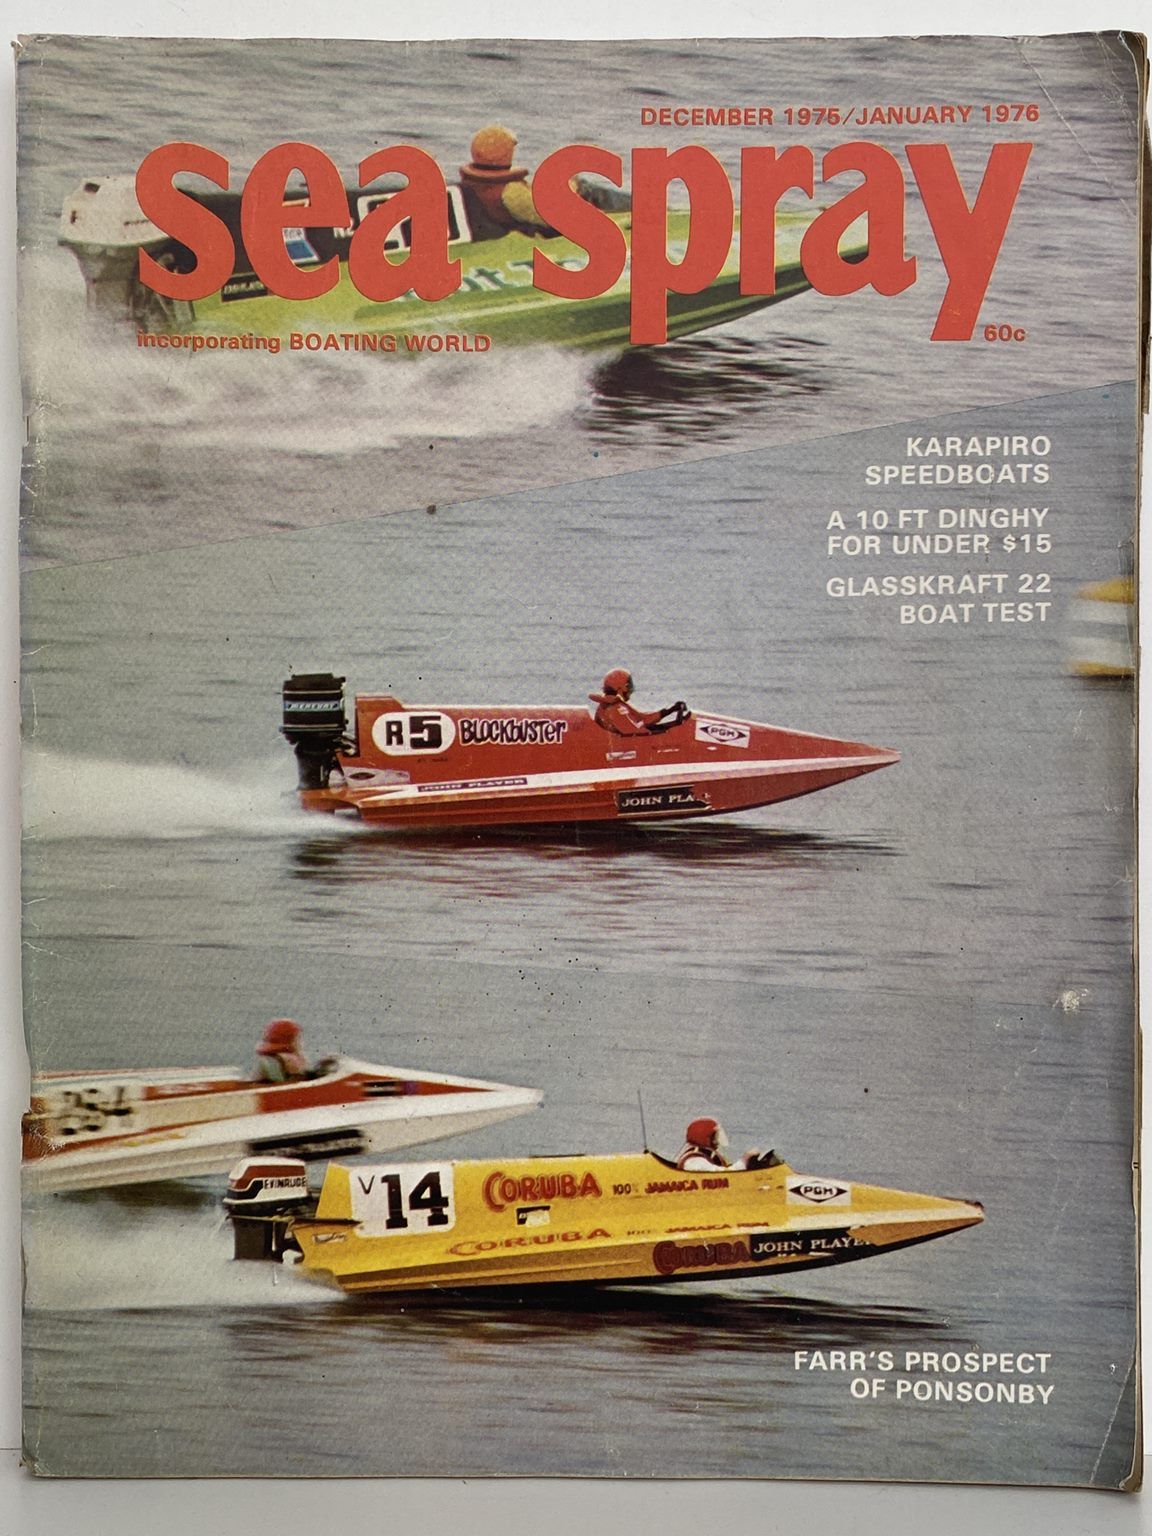 VINTAGE MAGAZINE: Sea Spray - Dec 1975 / Jan 1976